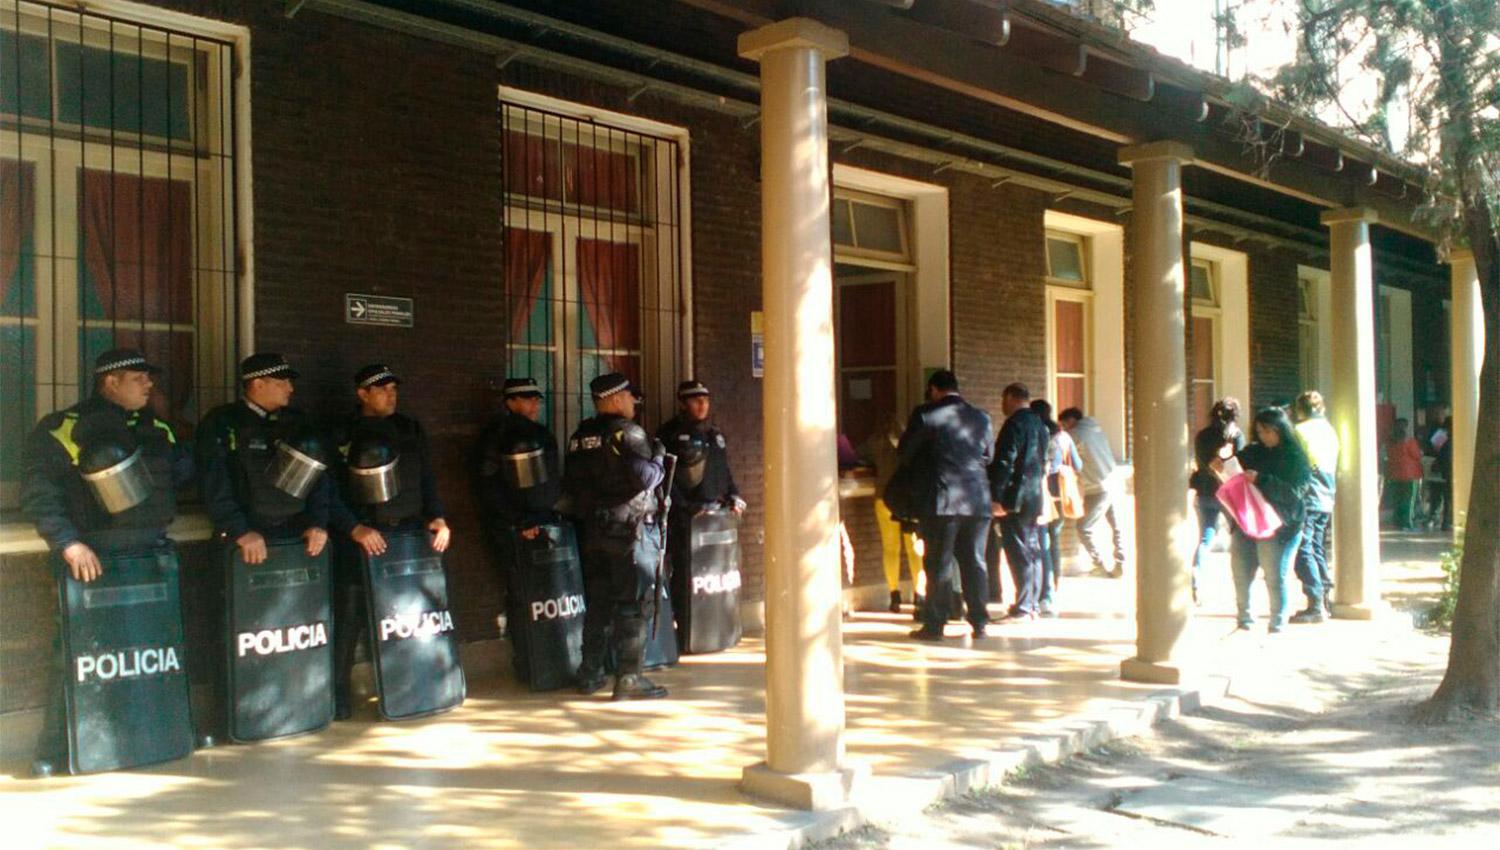 CUSTODIA. Una fuerte presencia policial se apostó en las puertas de la fiscalía II. FOTOS GENTILEZA DE FRANCISCO FERNÁNDEZ